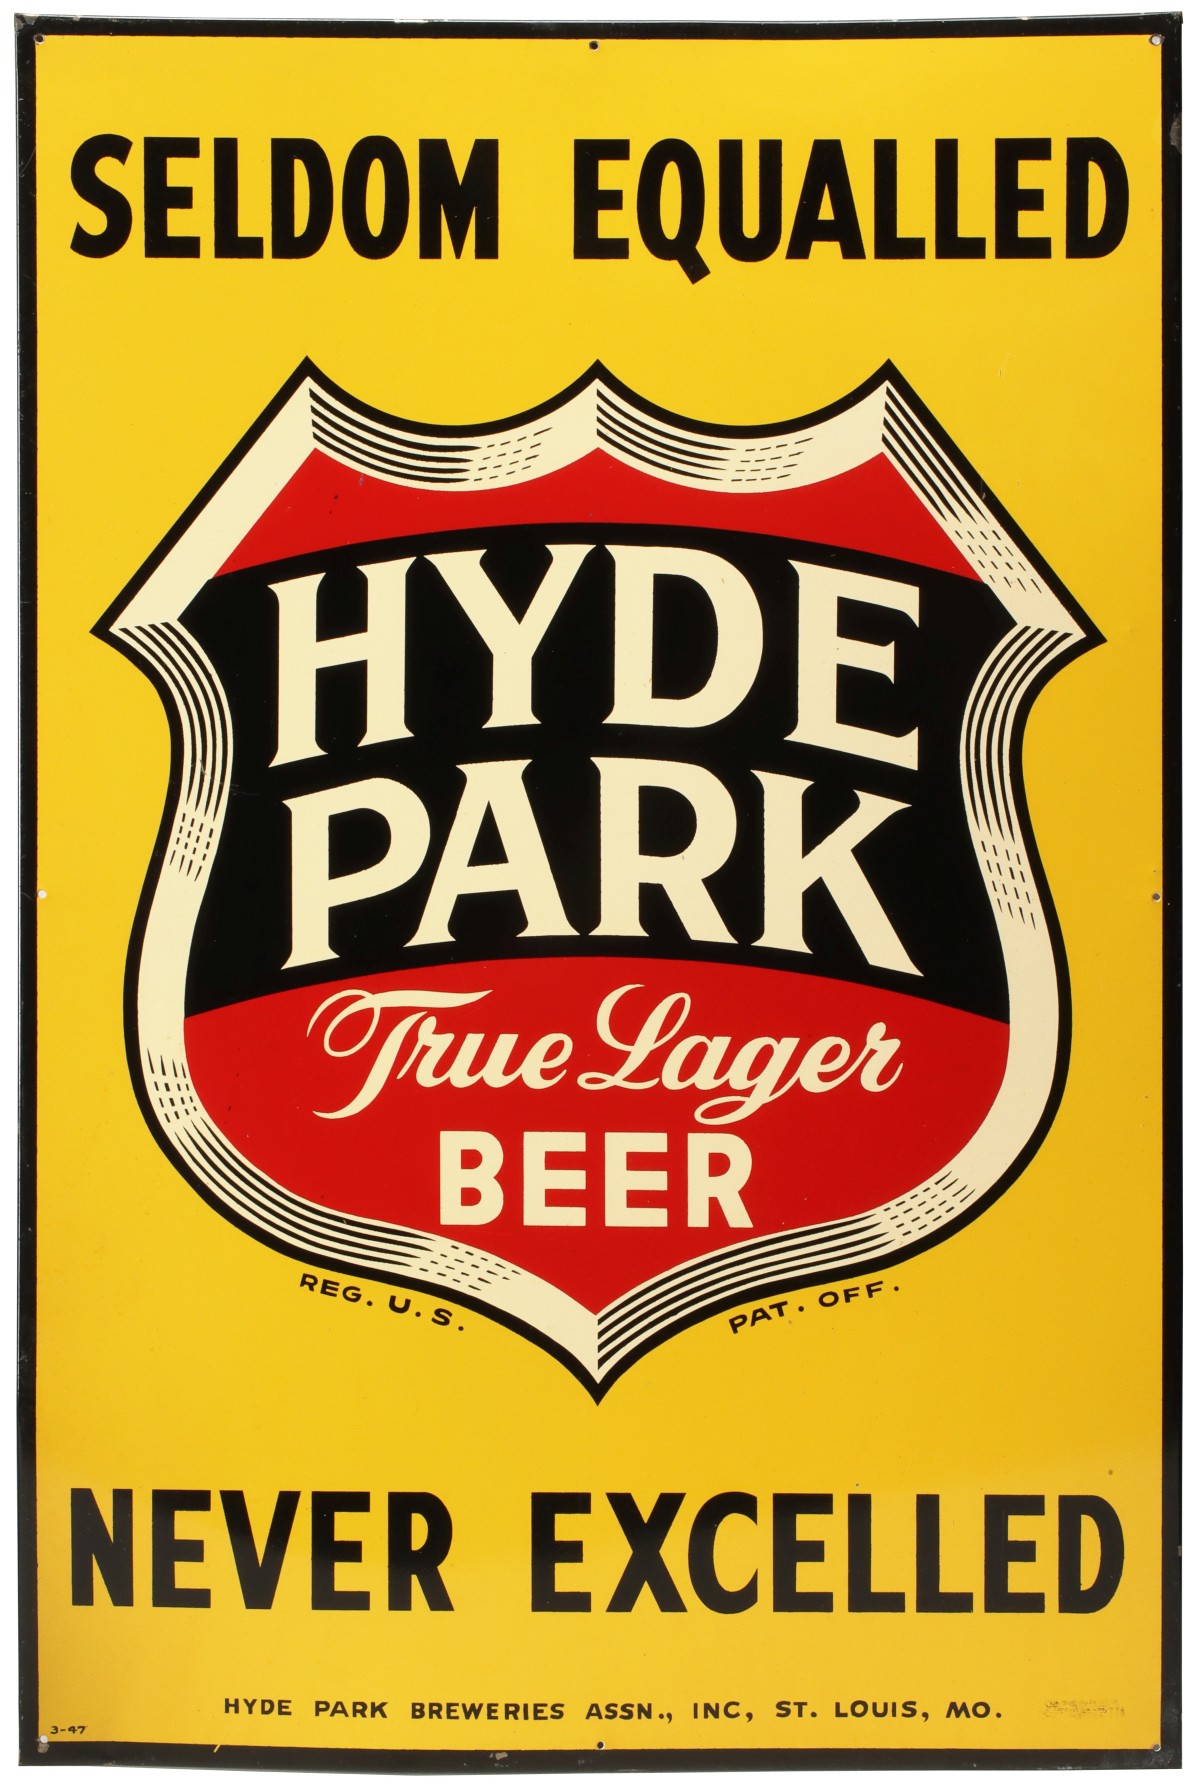 A HYDE PARK BEER ADVERTISING SIGN CIRCA 1947